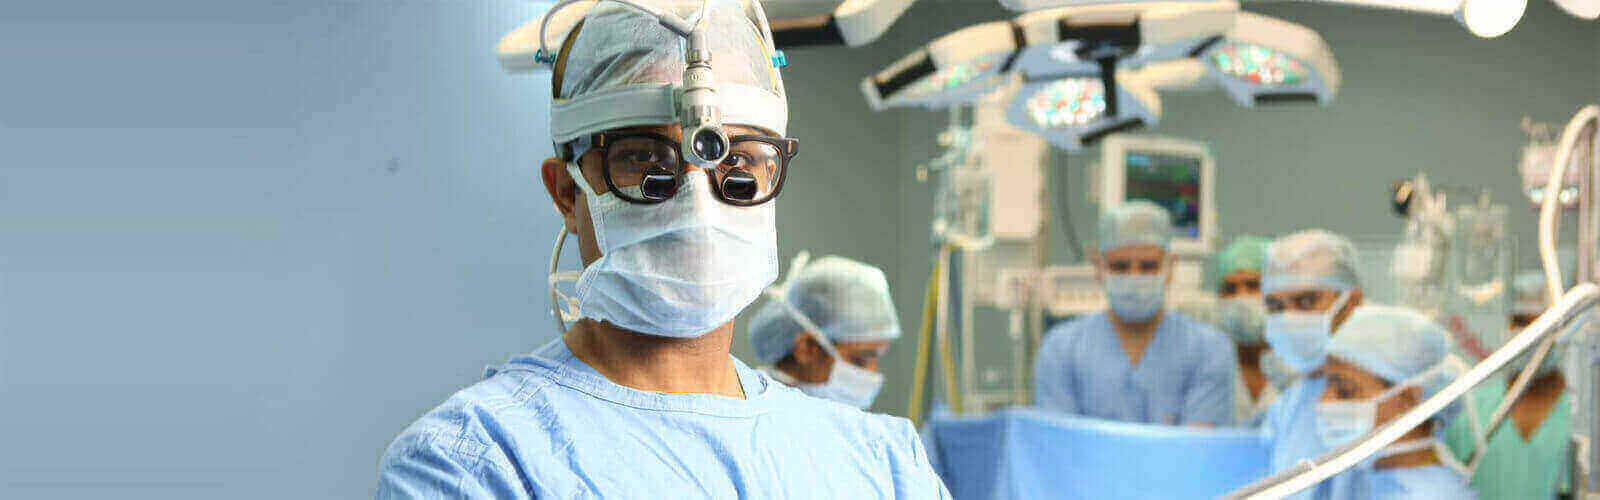 Heart Bypass Surgery in Honduras